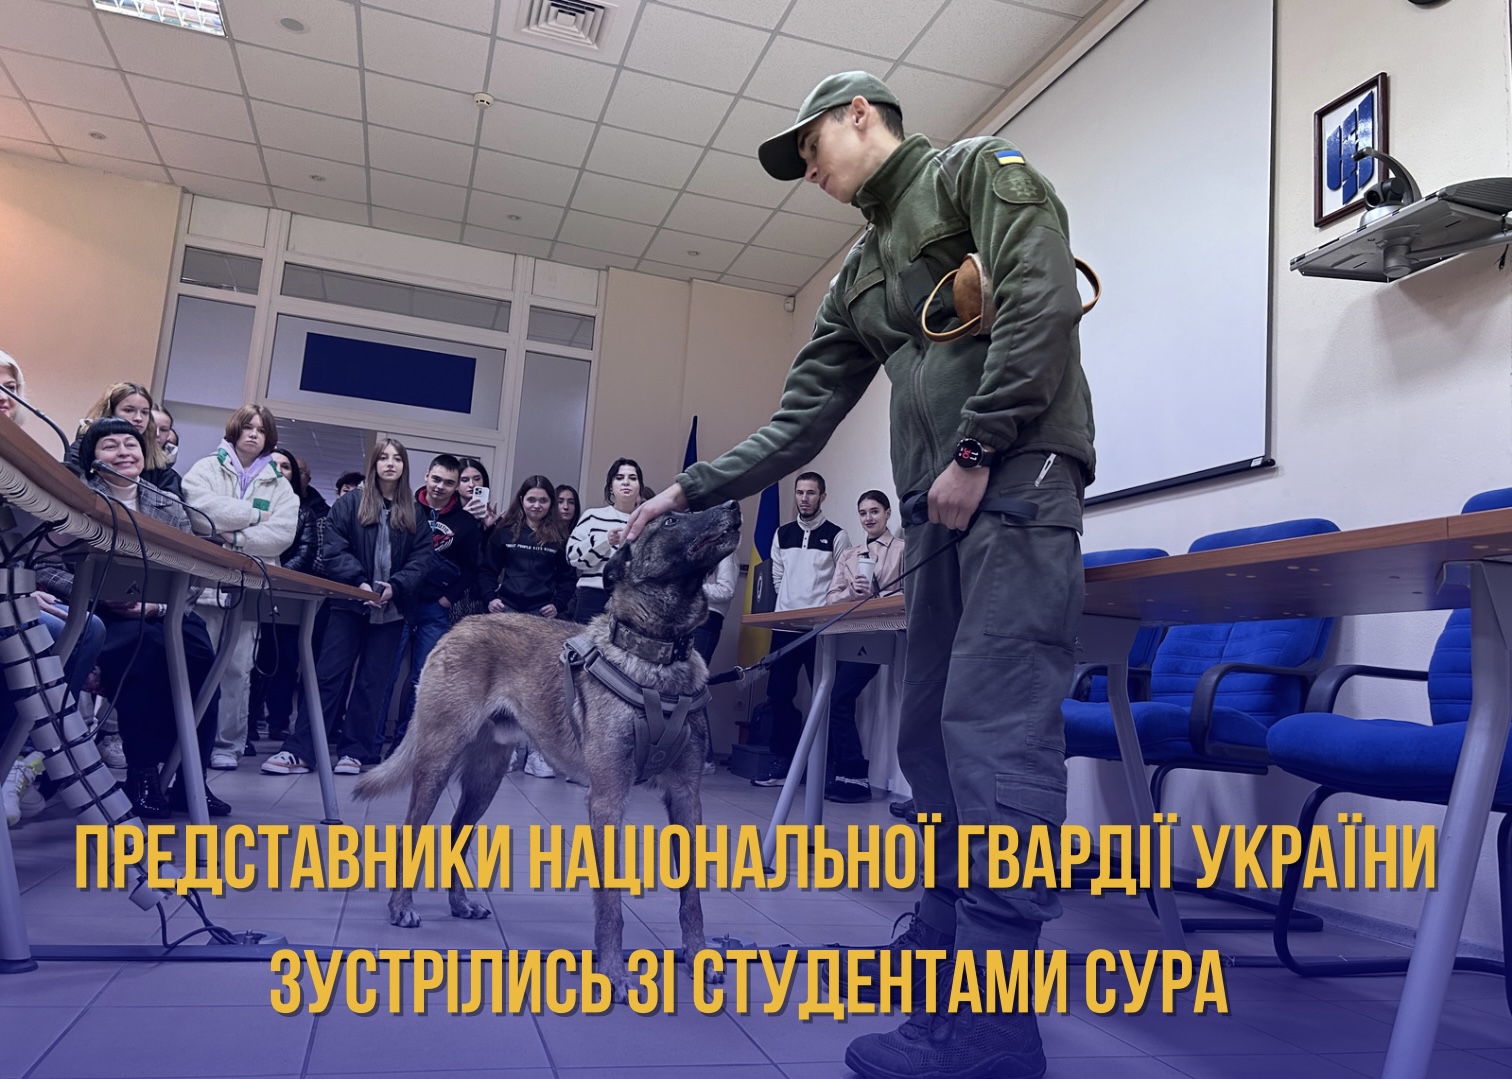 Представники Національної гвардії України зустрілись зі студентами СУРА